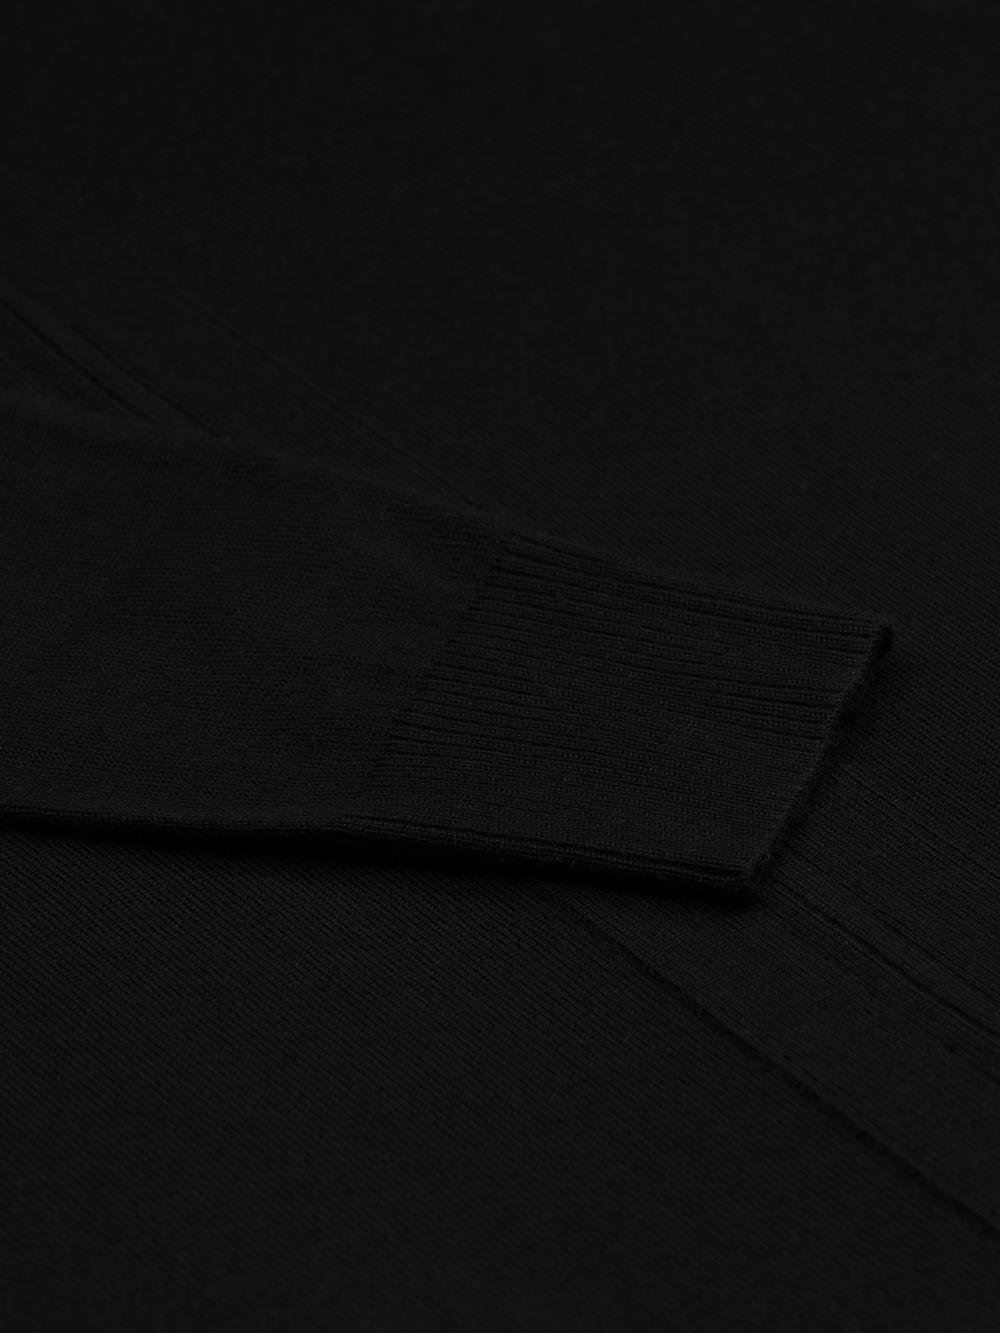 Bady vest met rits in zwart merino